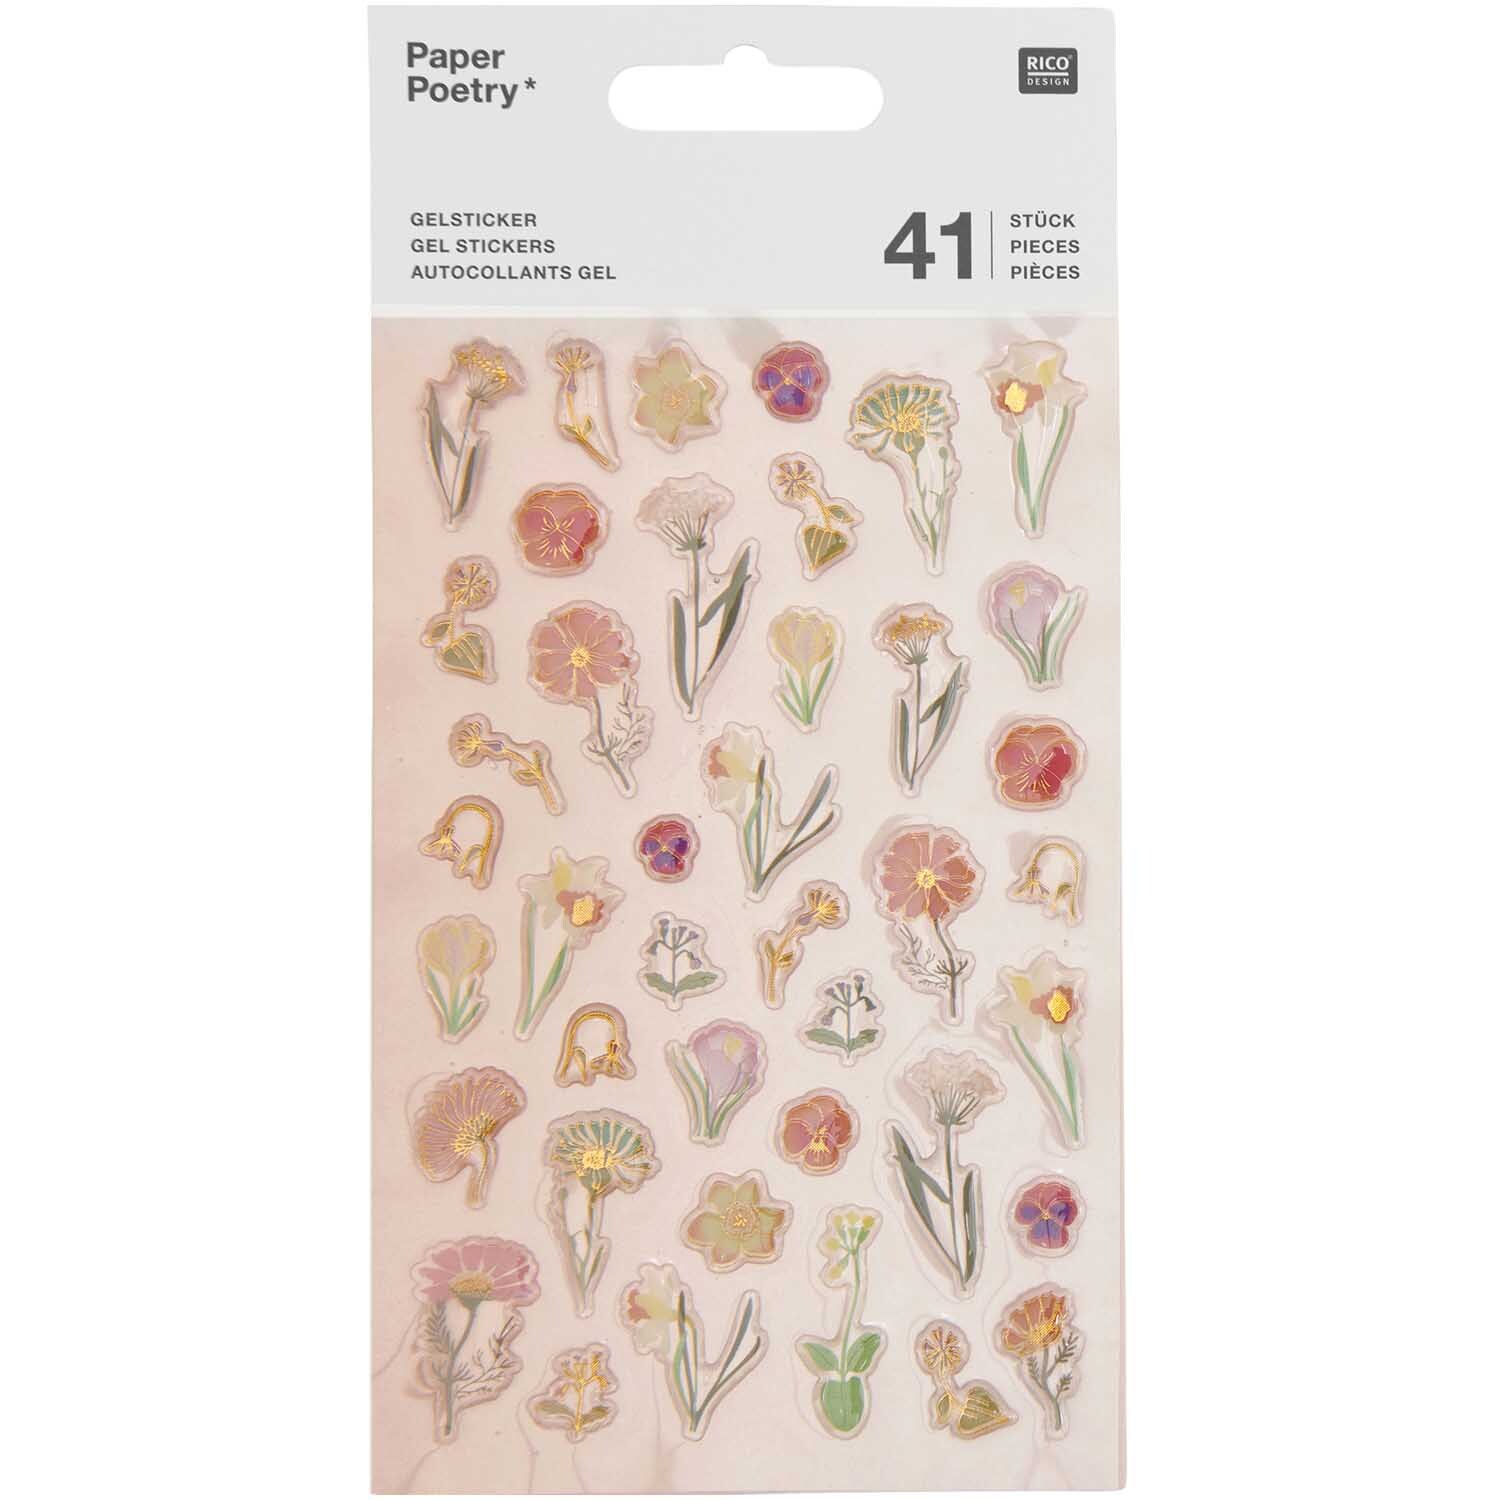 Paper Poetry Puffy-Sticker Futschikato Blumen